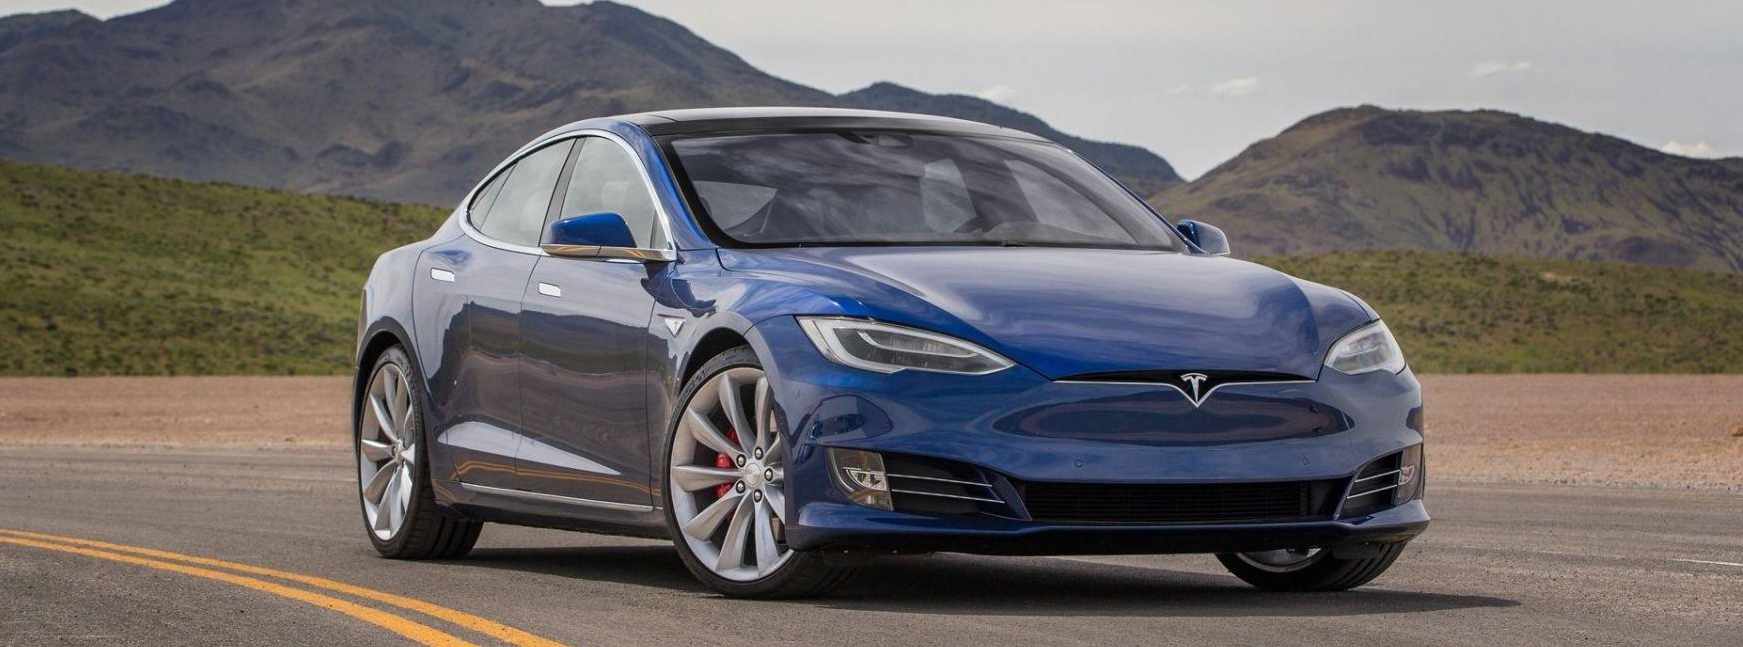 Tesla ordena a sus empleados liquidar todos los Model S y Model X de su inventario: el restyling es inminente